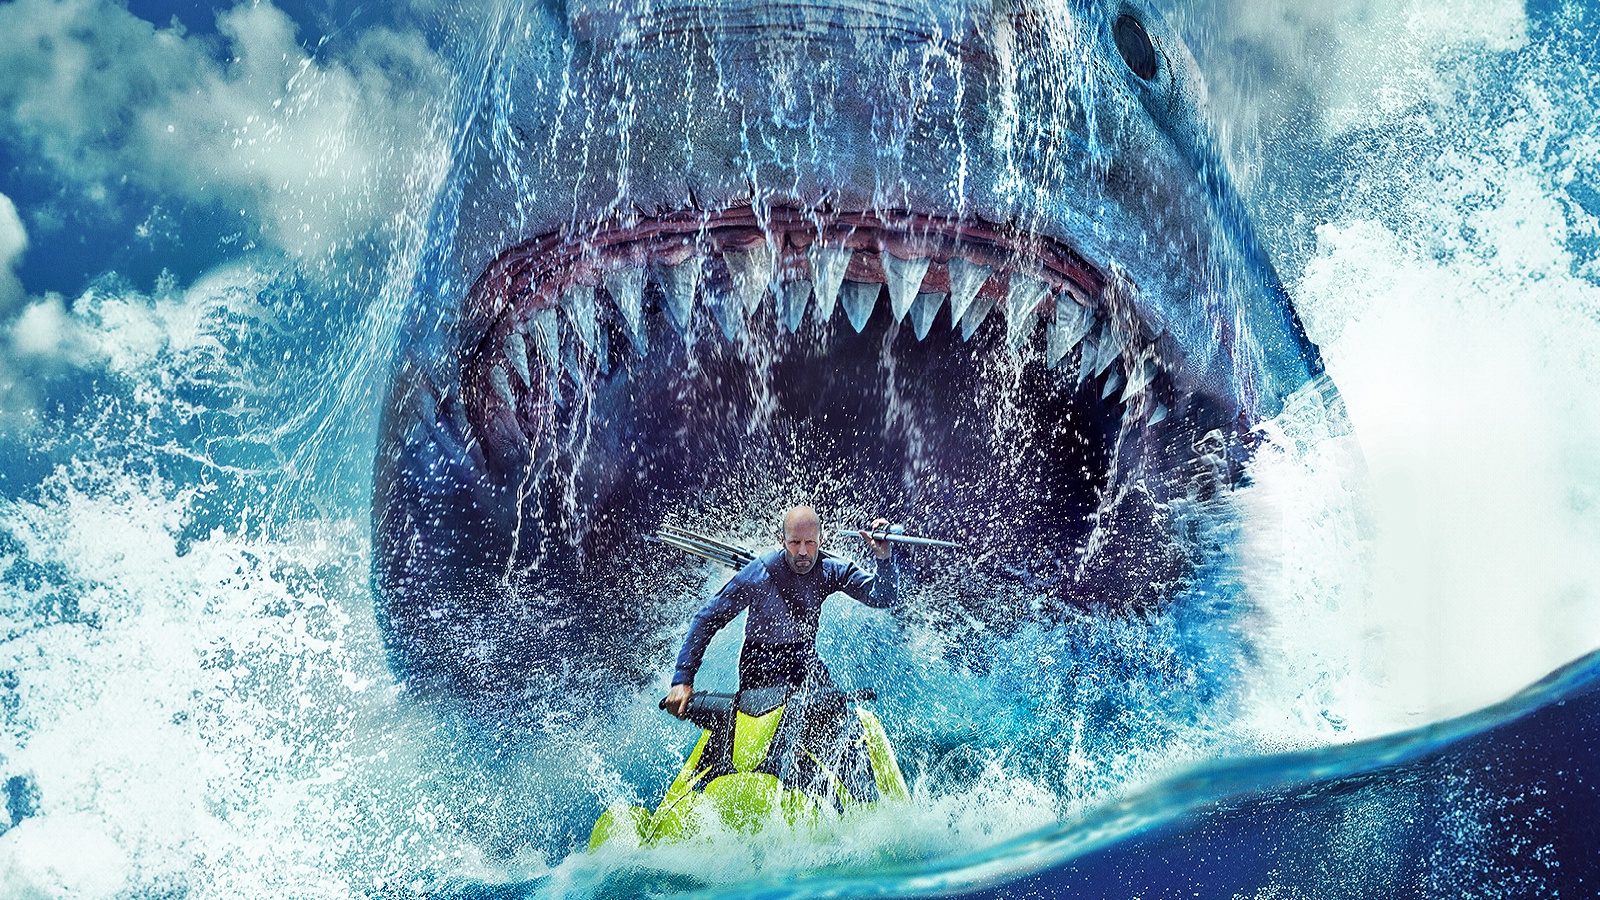 Shark 2 - L'abisso, la recensione: un irresistibile b-movie (e un sequel migliore dell'originale!)